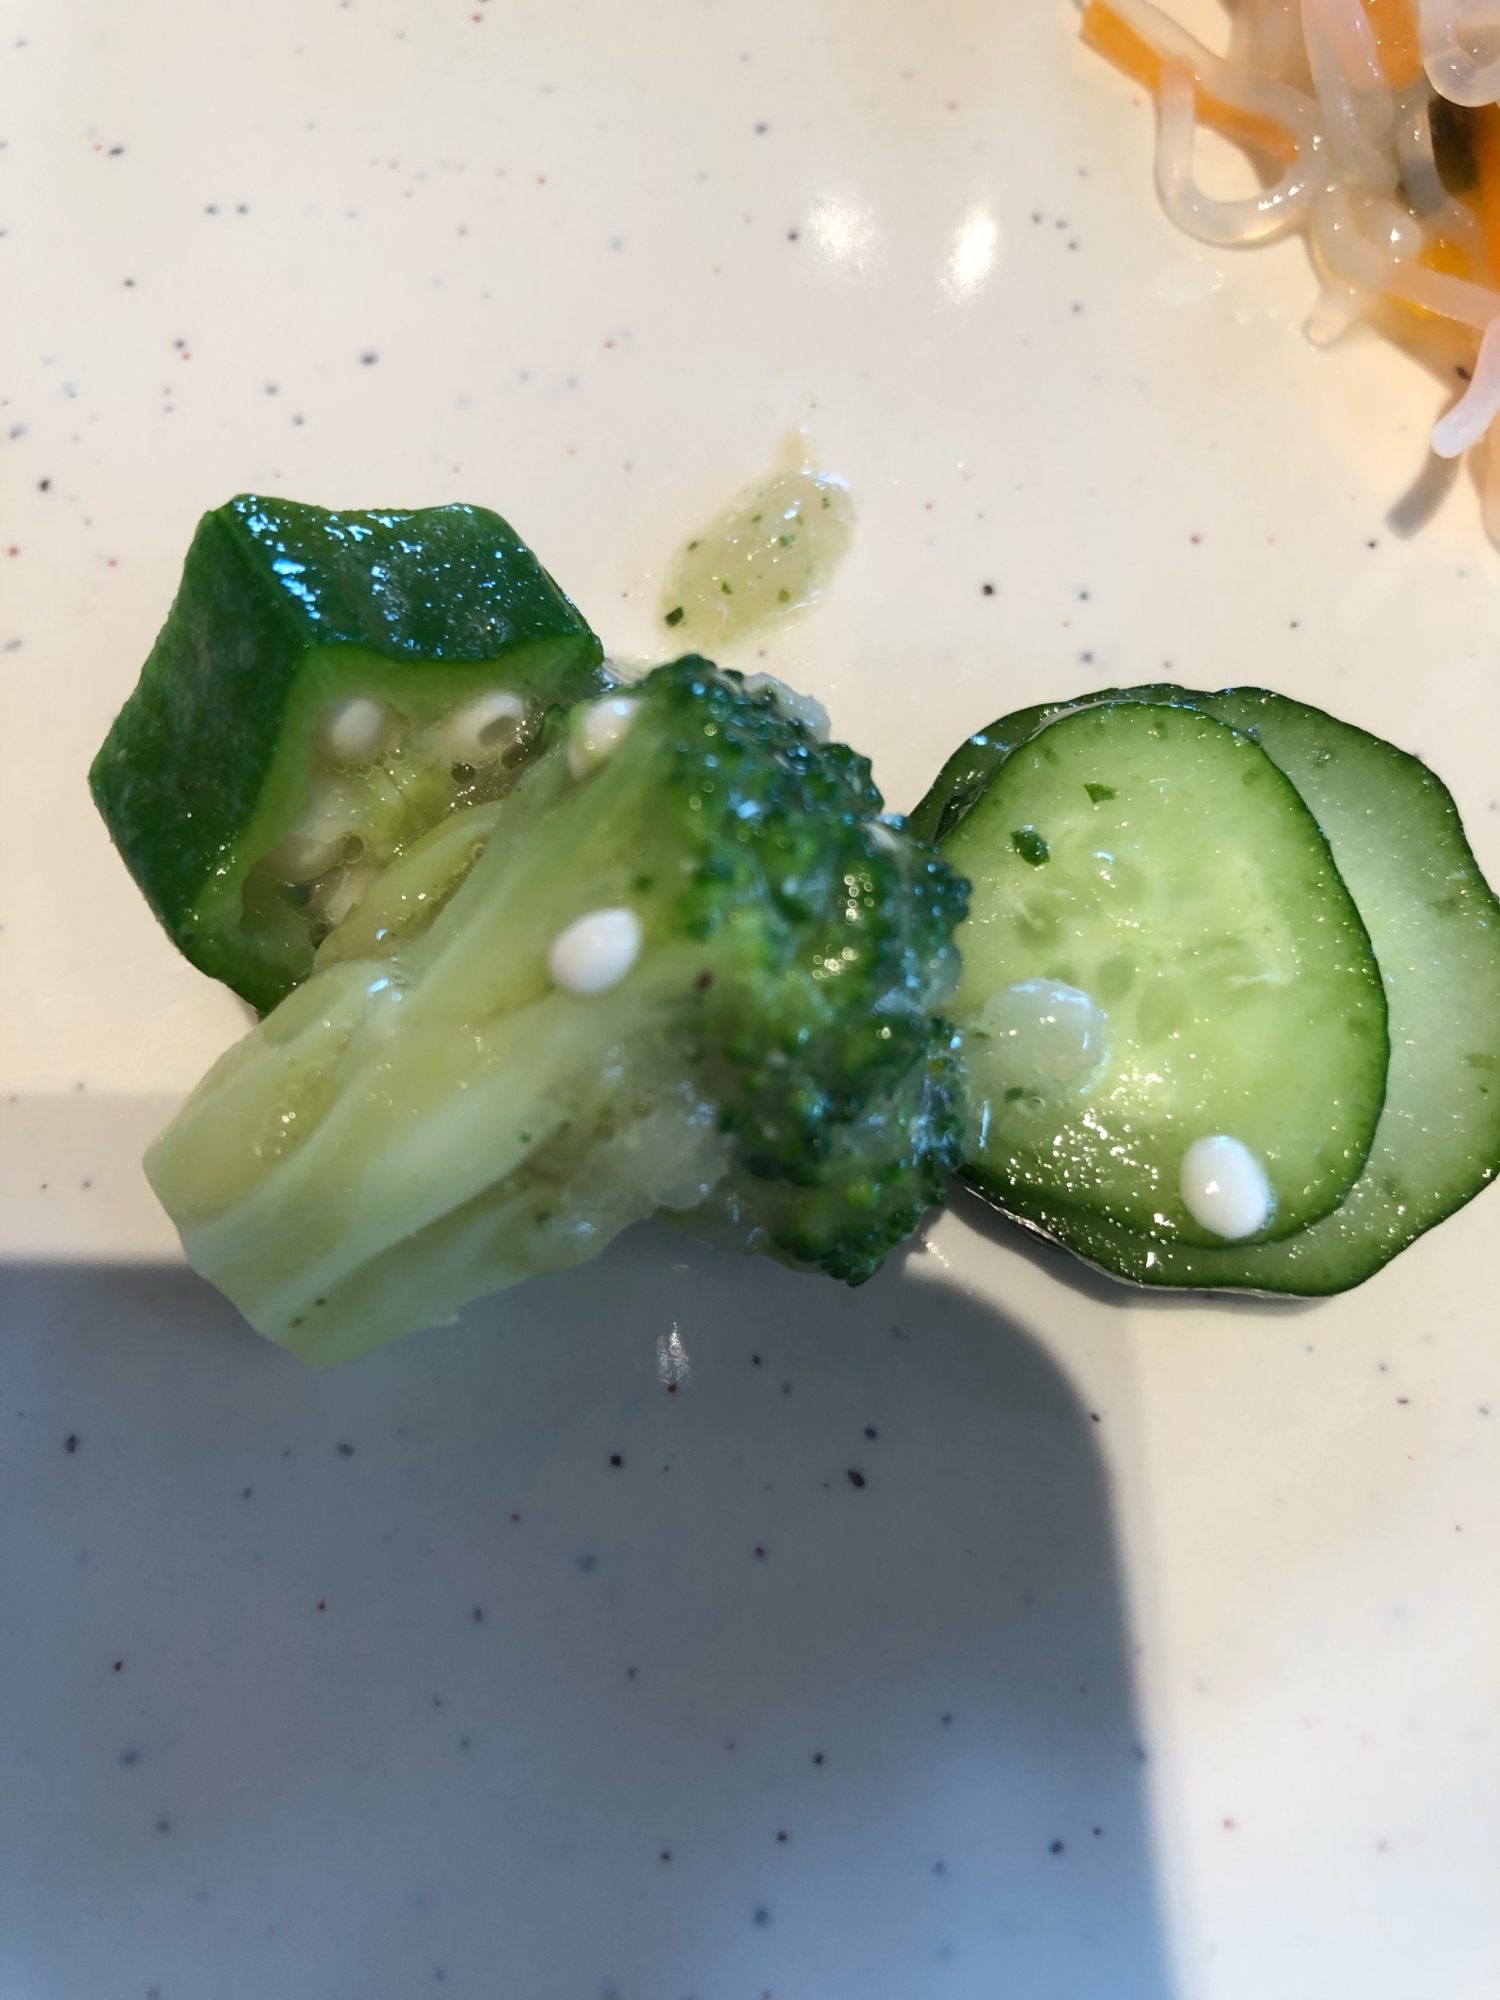 ブロッコリーキュウリオクラのグリーンサラダ